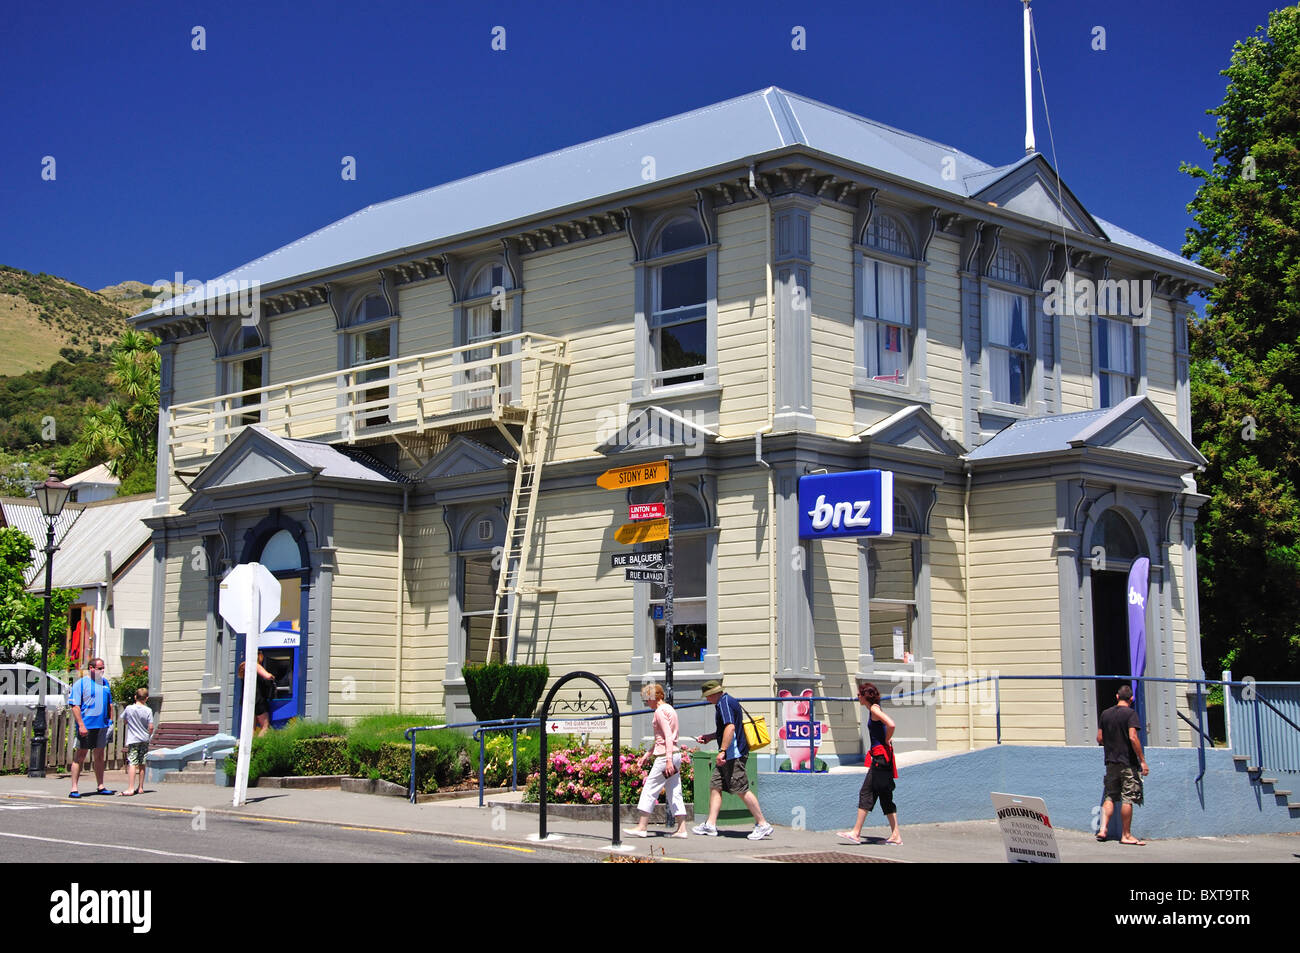 Banque BNZ, Rue Balguerie, Akaroa, la péninsule de Banks, Canterbury, Nouvelle-Zélande Banque D'Images